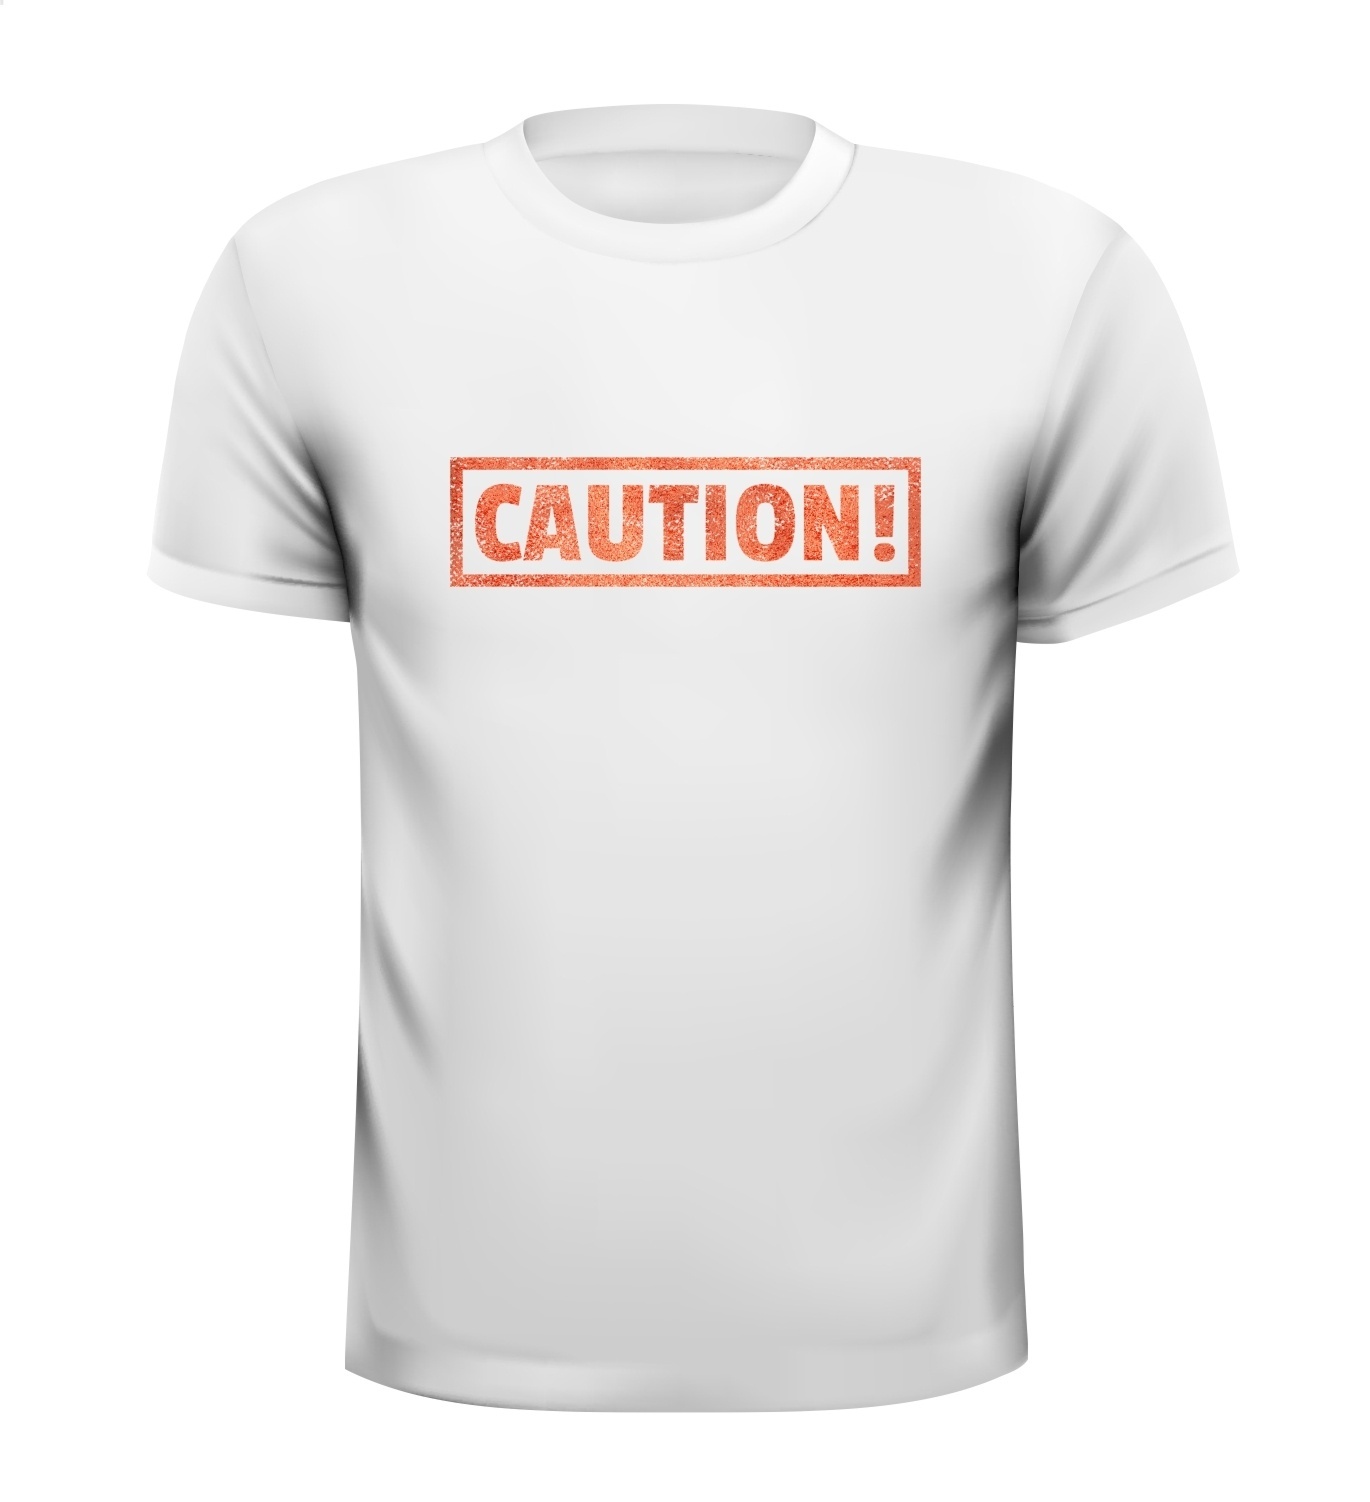 Caution waarschuwing let op shirt